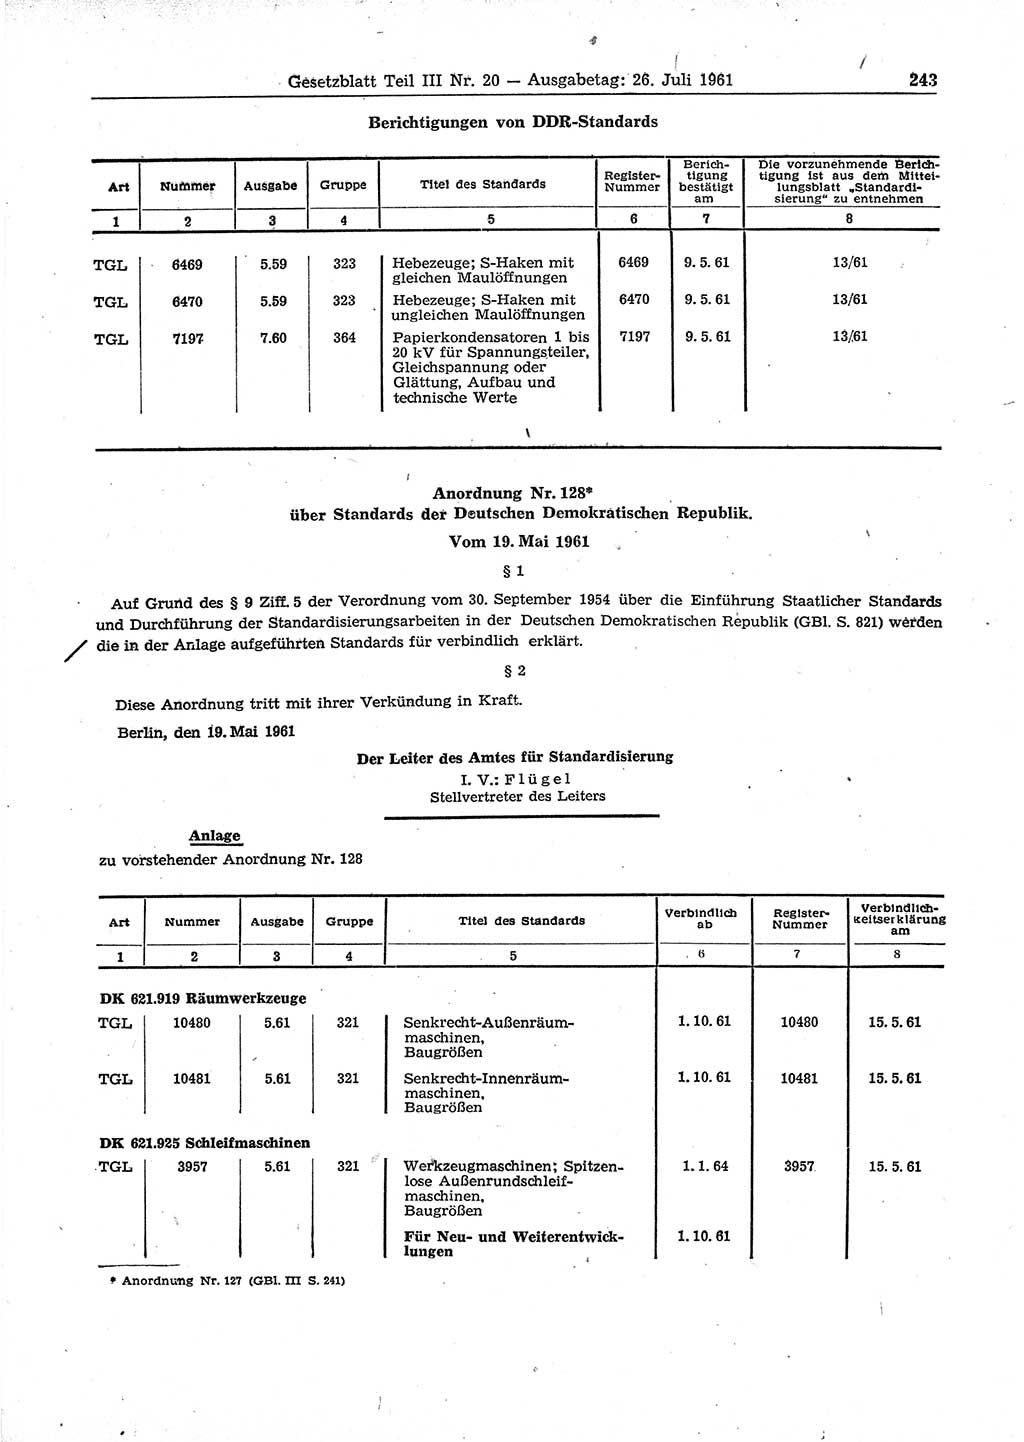 Gesetzblatt (GBl.) der Deutschen Demokratischen Republik (DDR) Teil ⅠⅠⅠ 1961, Seite 243 (GBl. DDR ⅠⅠⅠ 1961, S. 243)